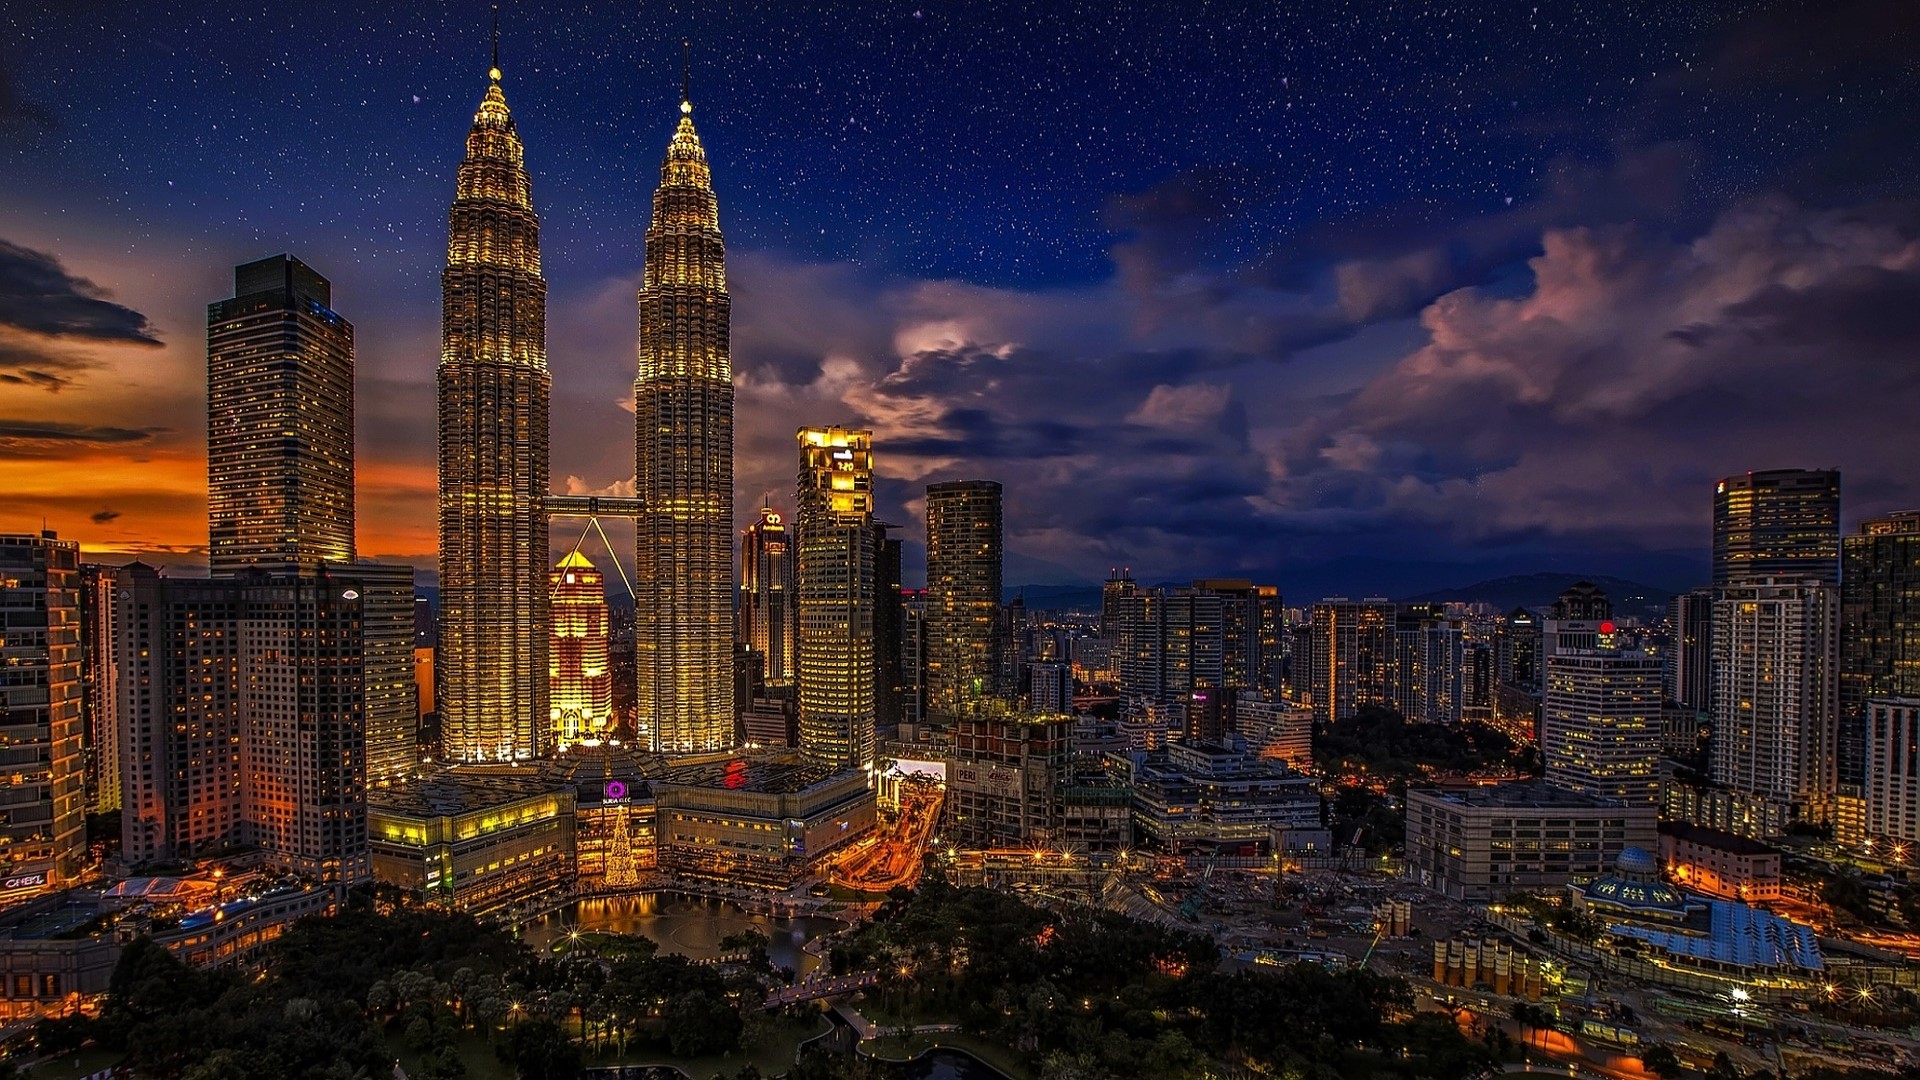 Kuala Lumpur, Malaysia by AzDude